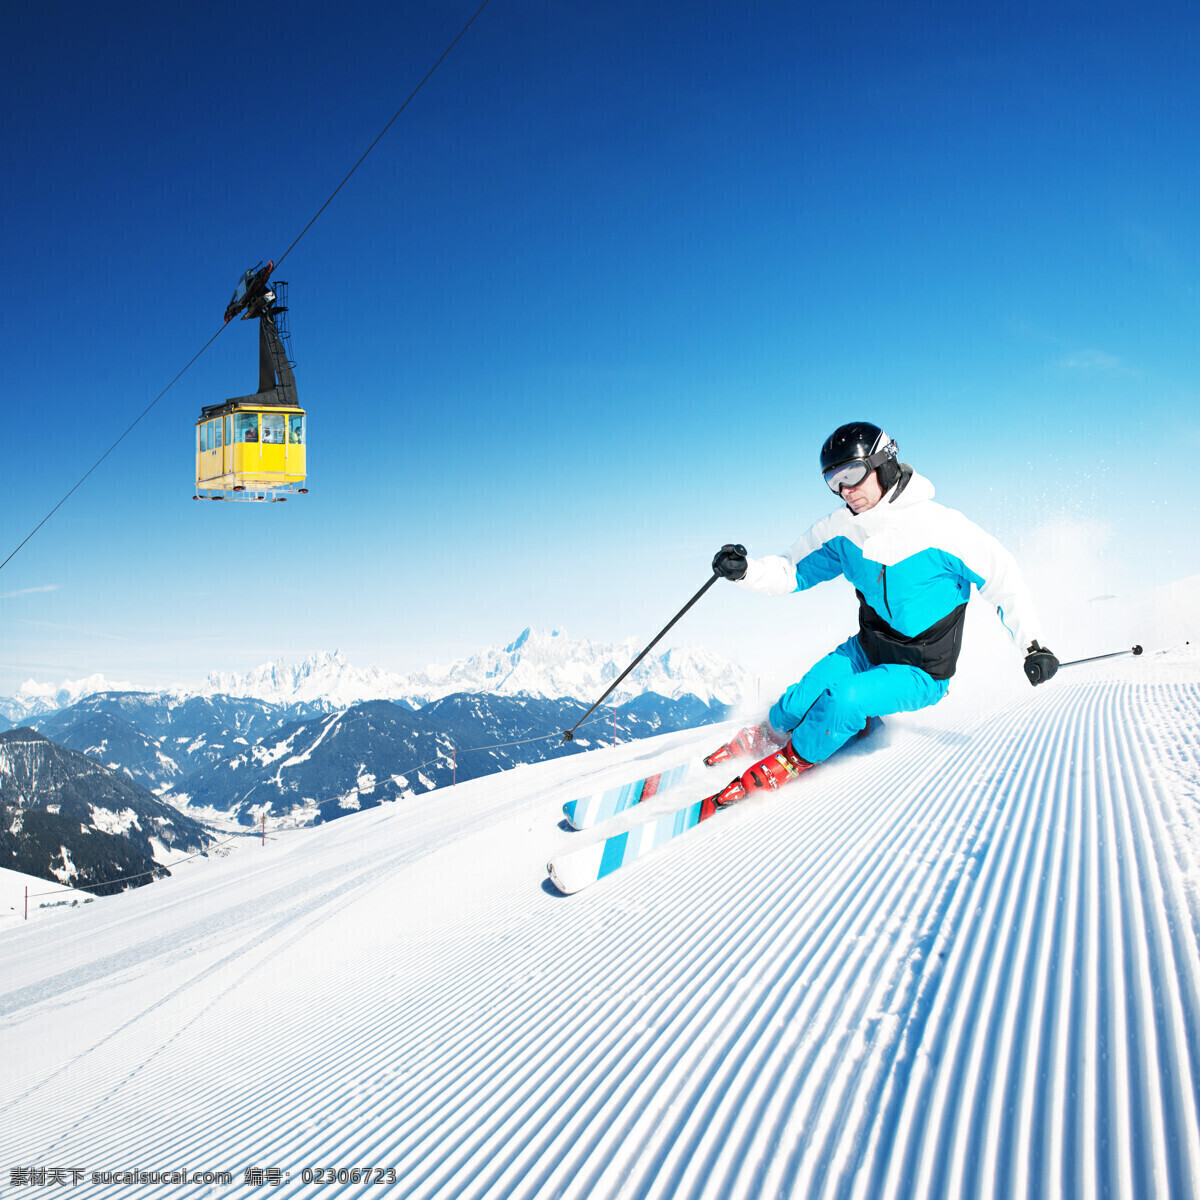 缆车 滑雪 运动员 滑雪运动员 极限运动 体育运动 雪山风景 雪地风景 其他类别 生活百科 白色